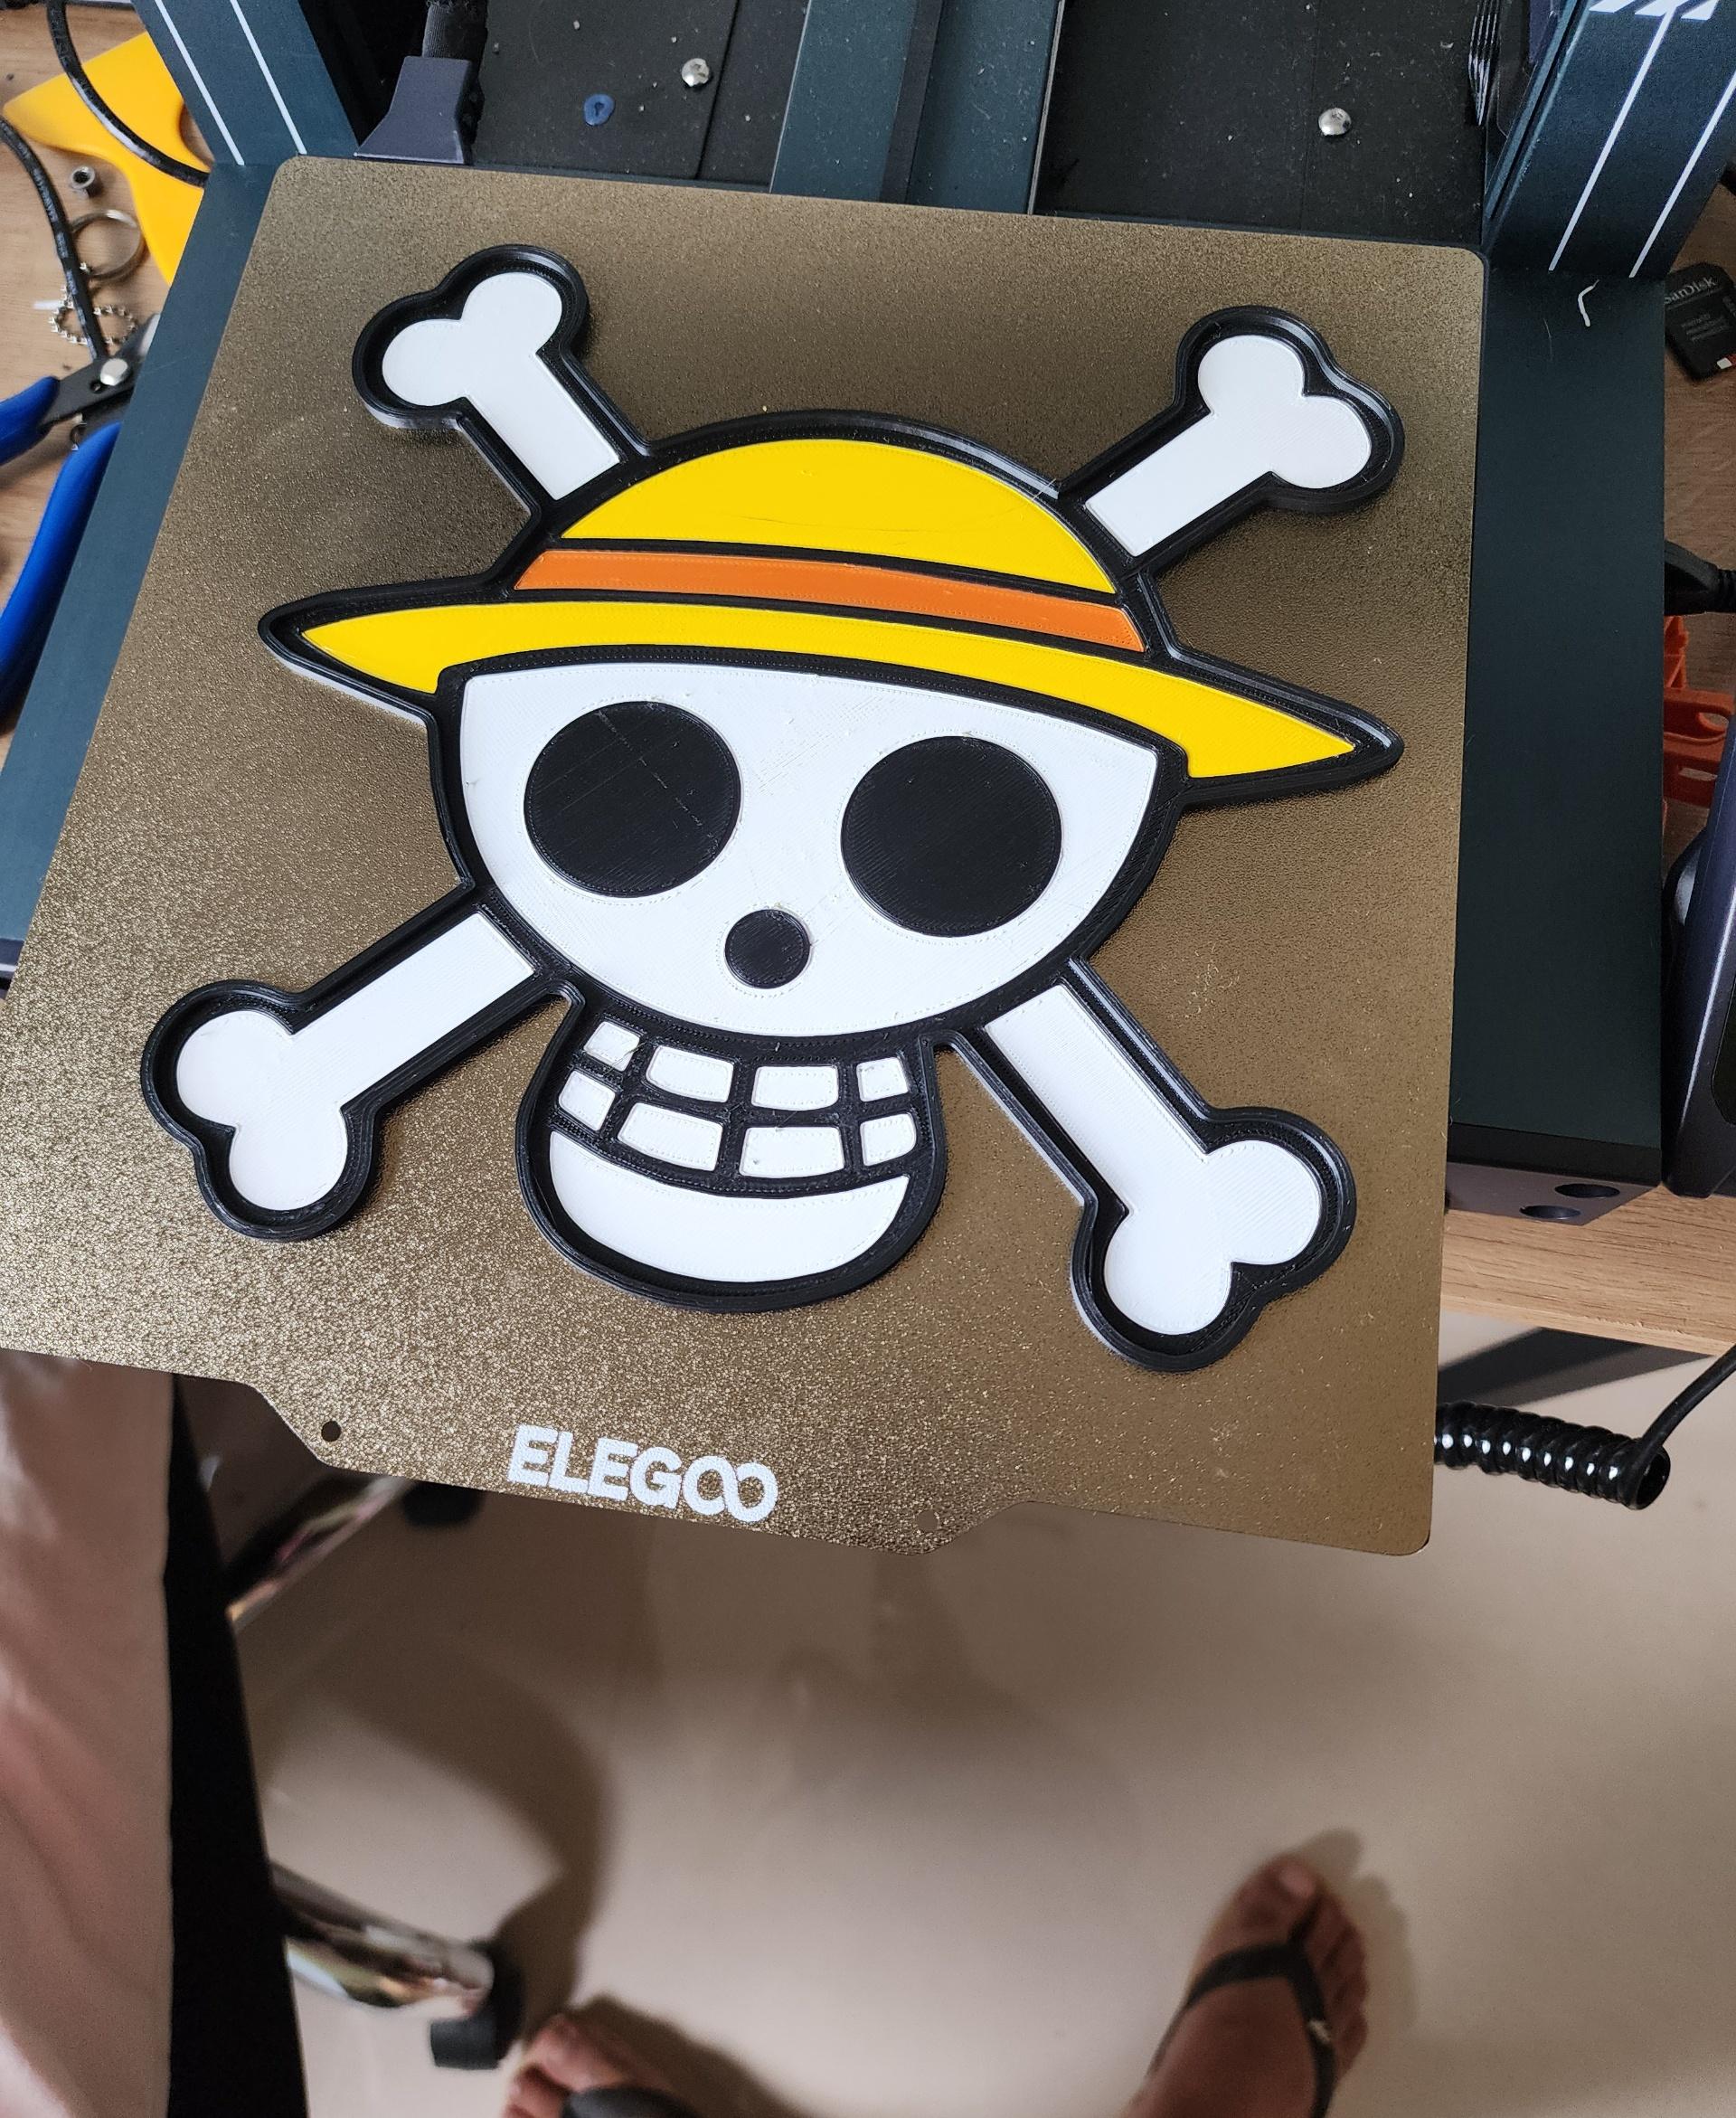 One Piece Lamp - Muito bom, obrigado por compartilhar o arquivo e o tutorial ! - 3d model